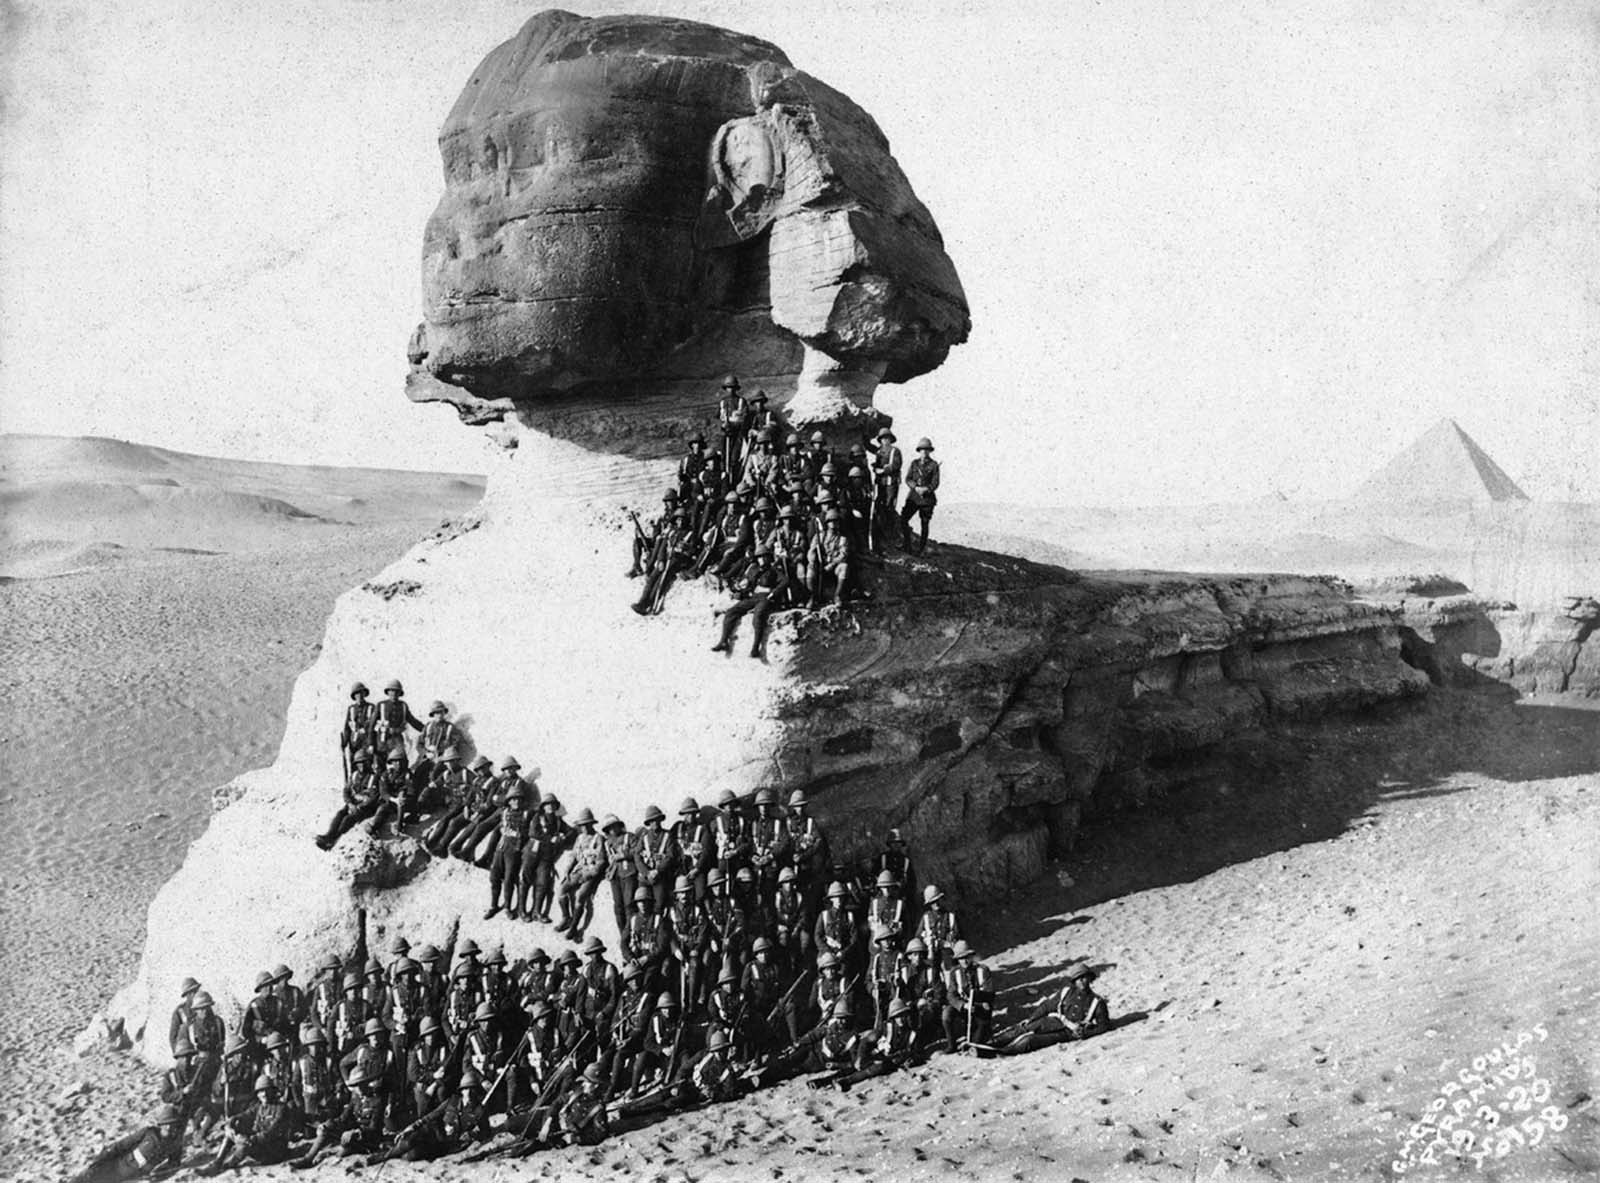 Оригинальная подпись от марта 1920 года: “Пехотинцы позируют для фотографии на Большом Сфинксе, построенном около 2500 г. до н.э., в Гизе, в Египте”.